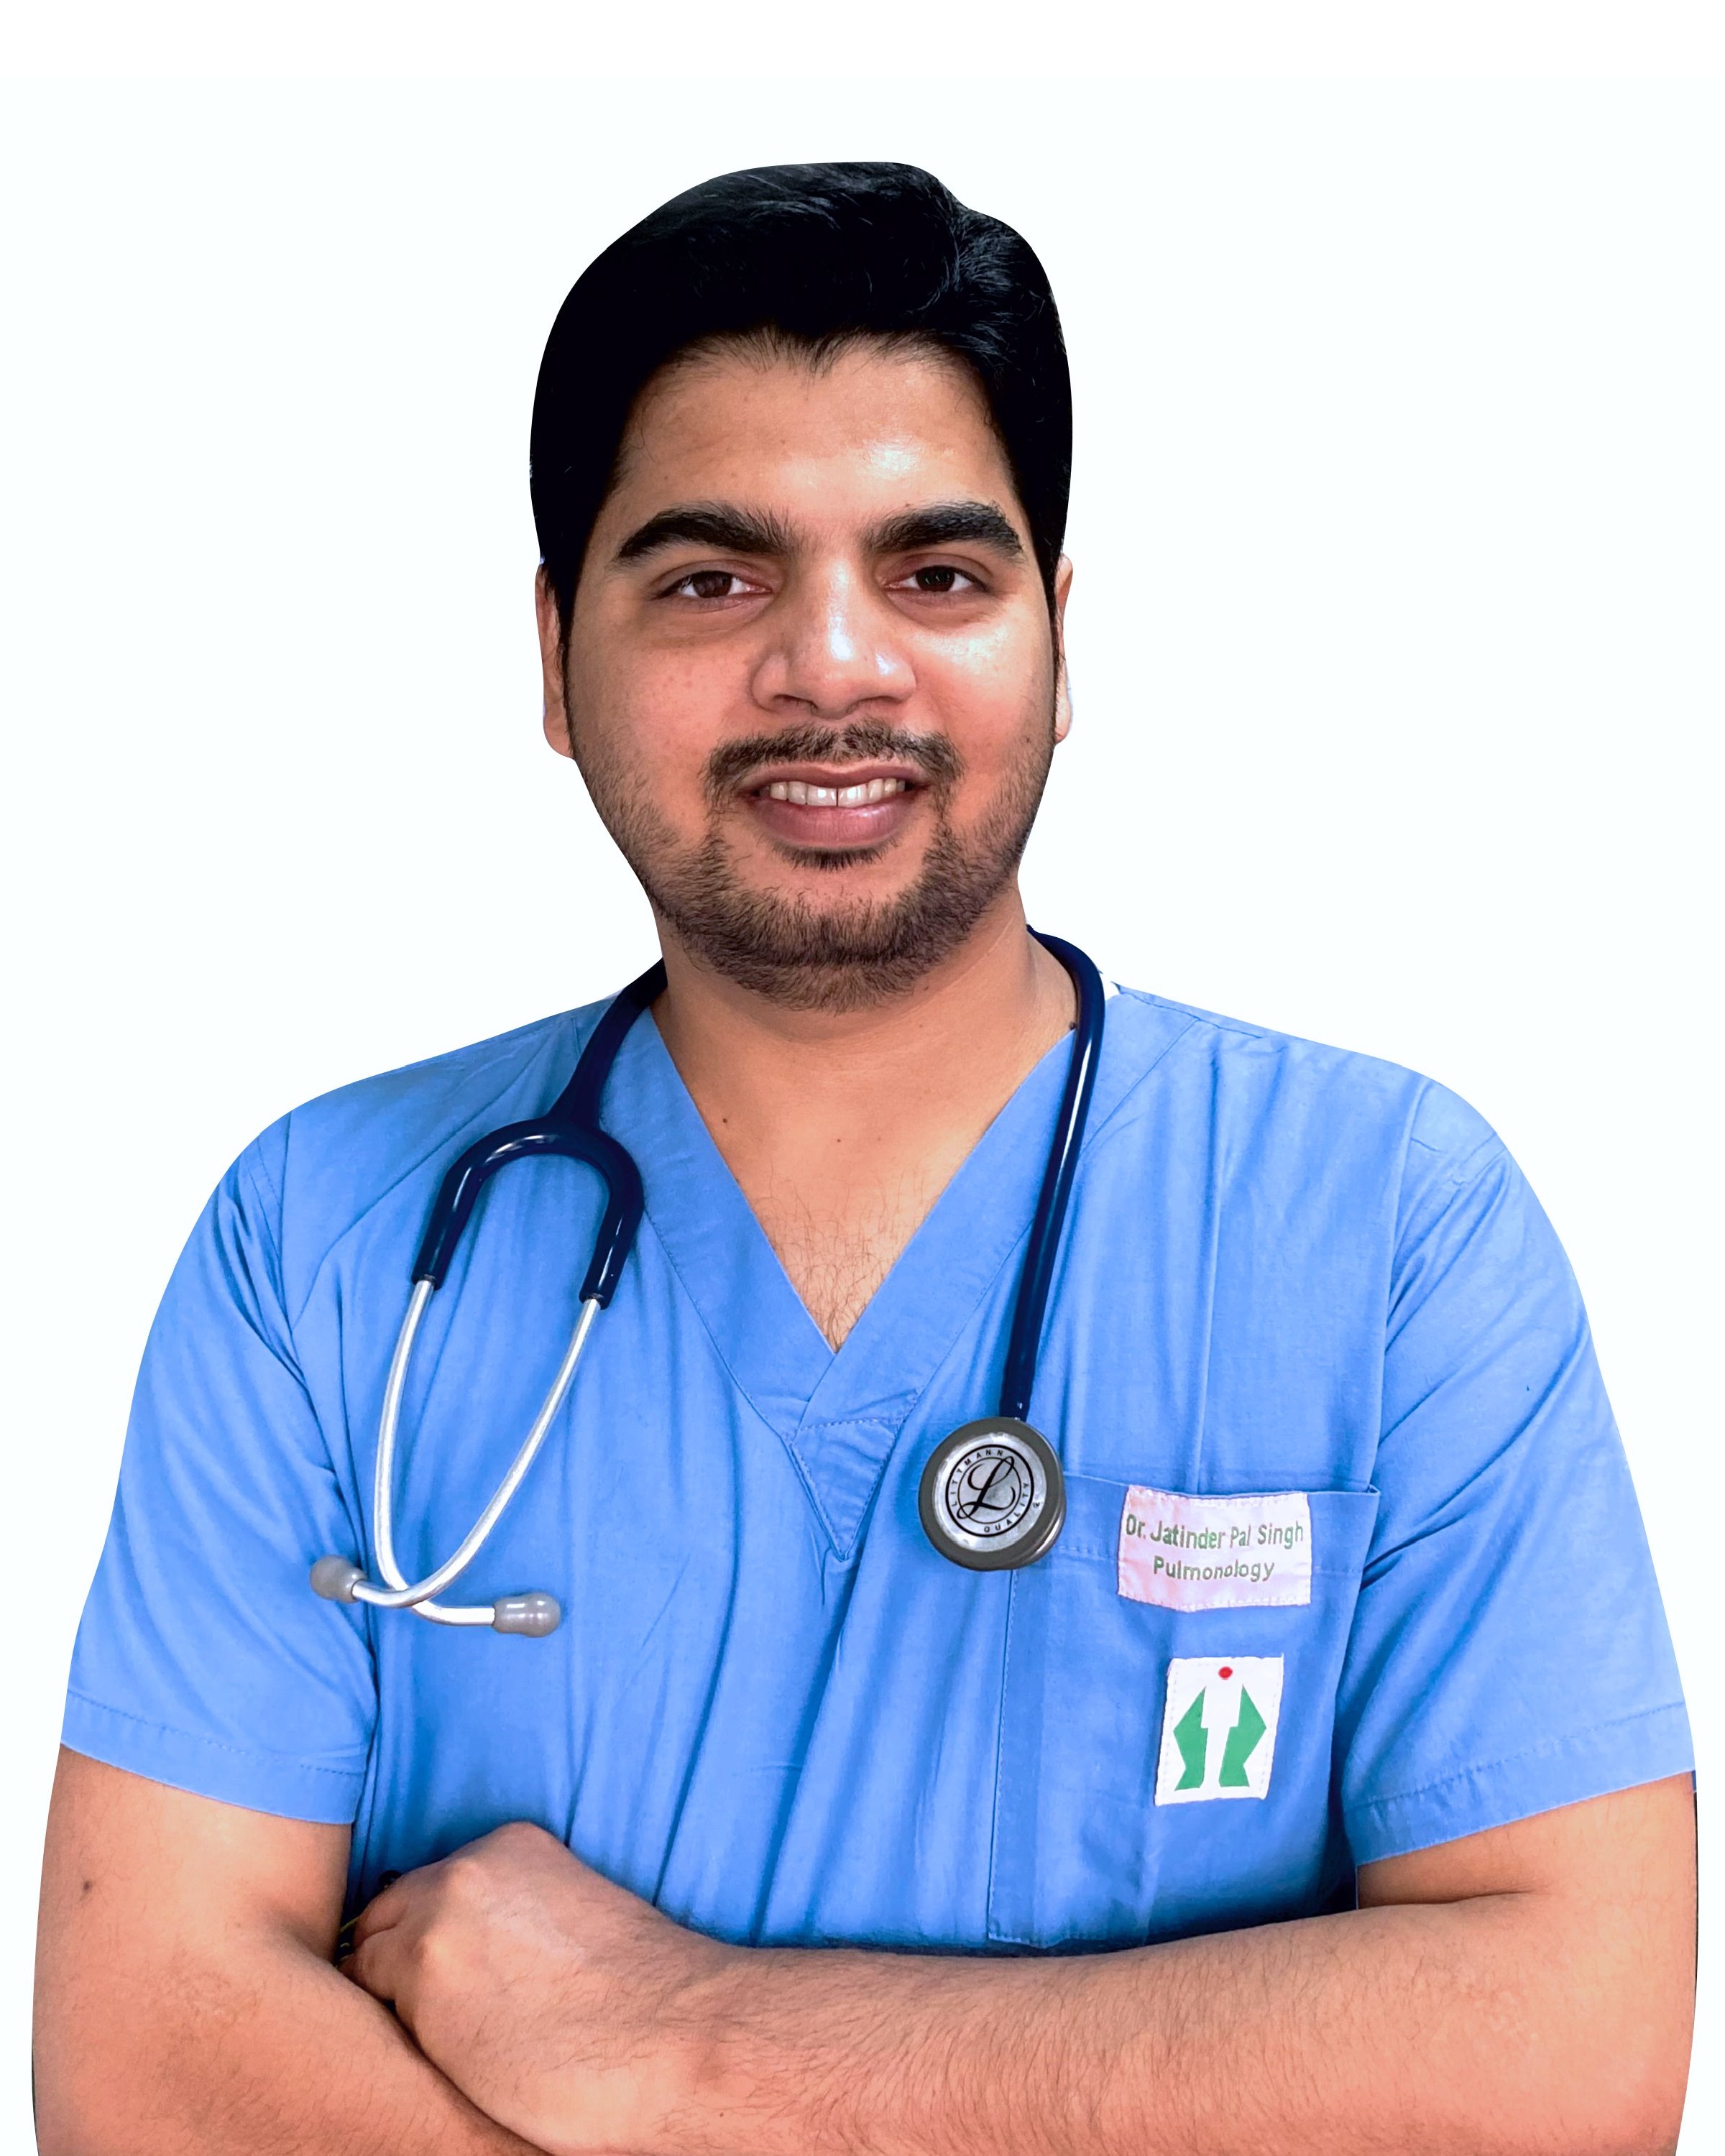 Dr. Jatinder Pal Singh